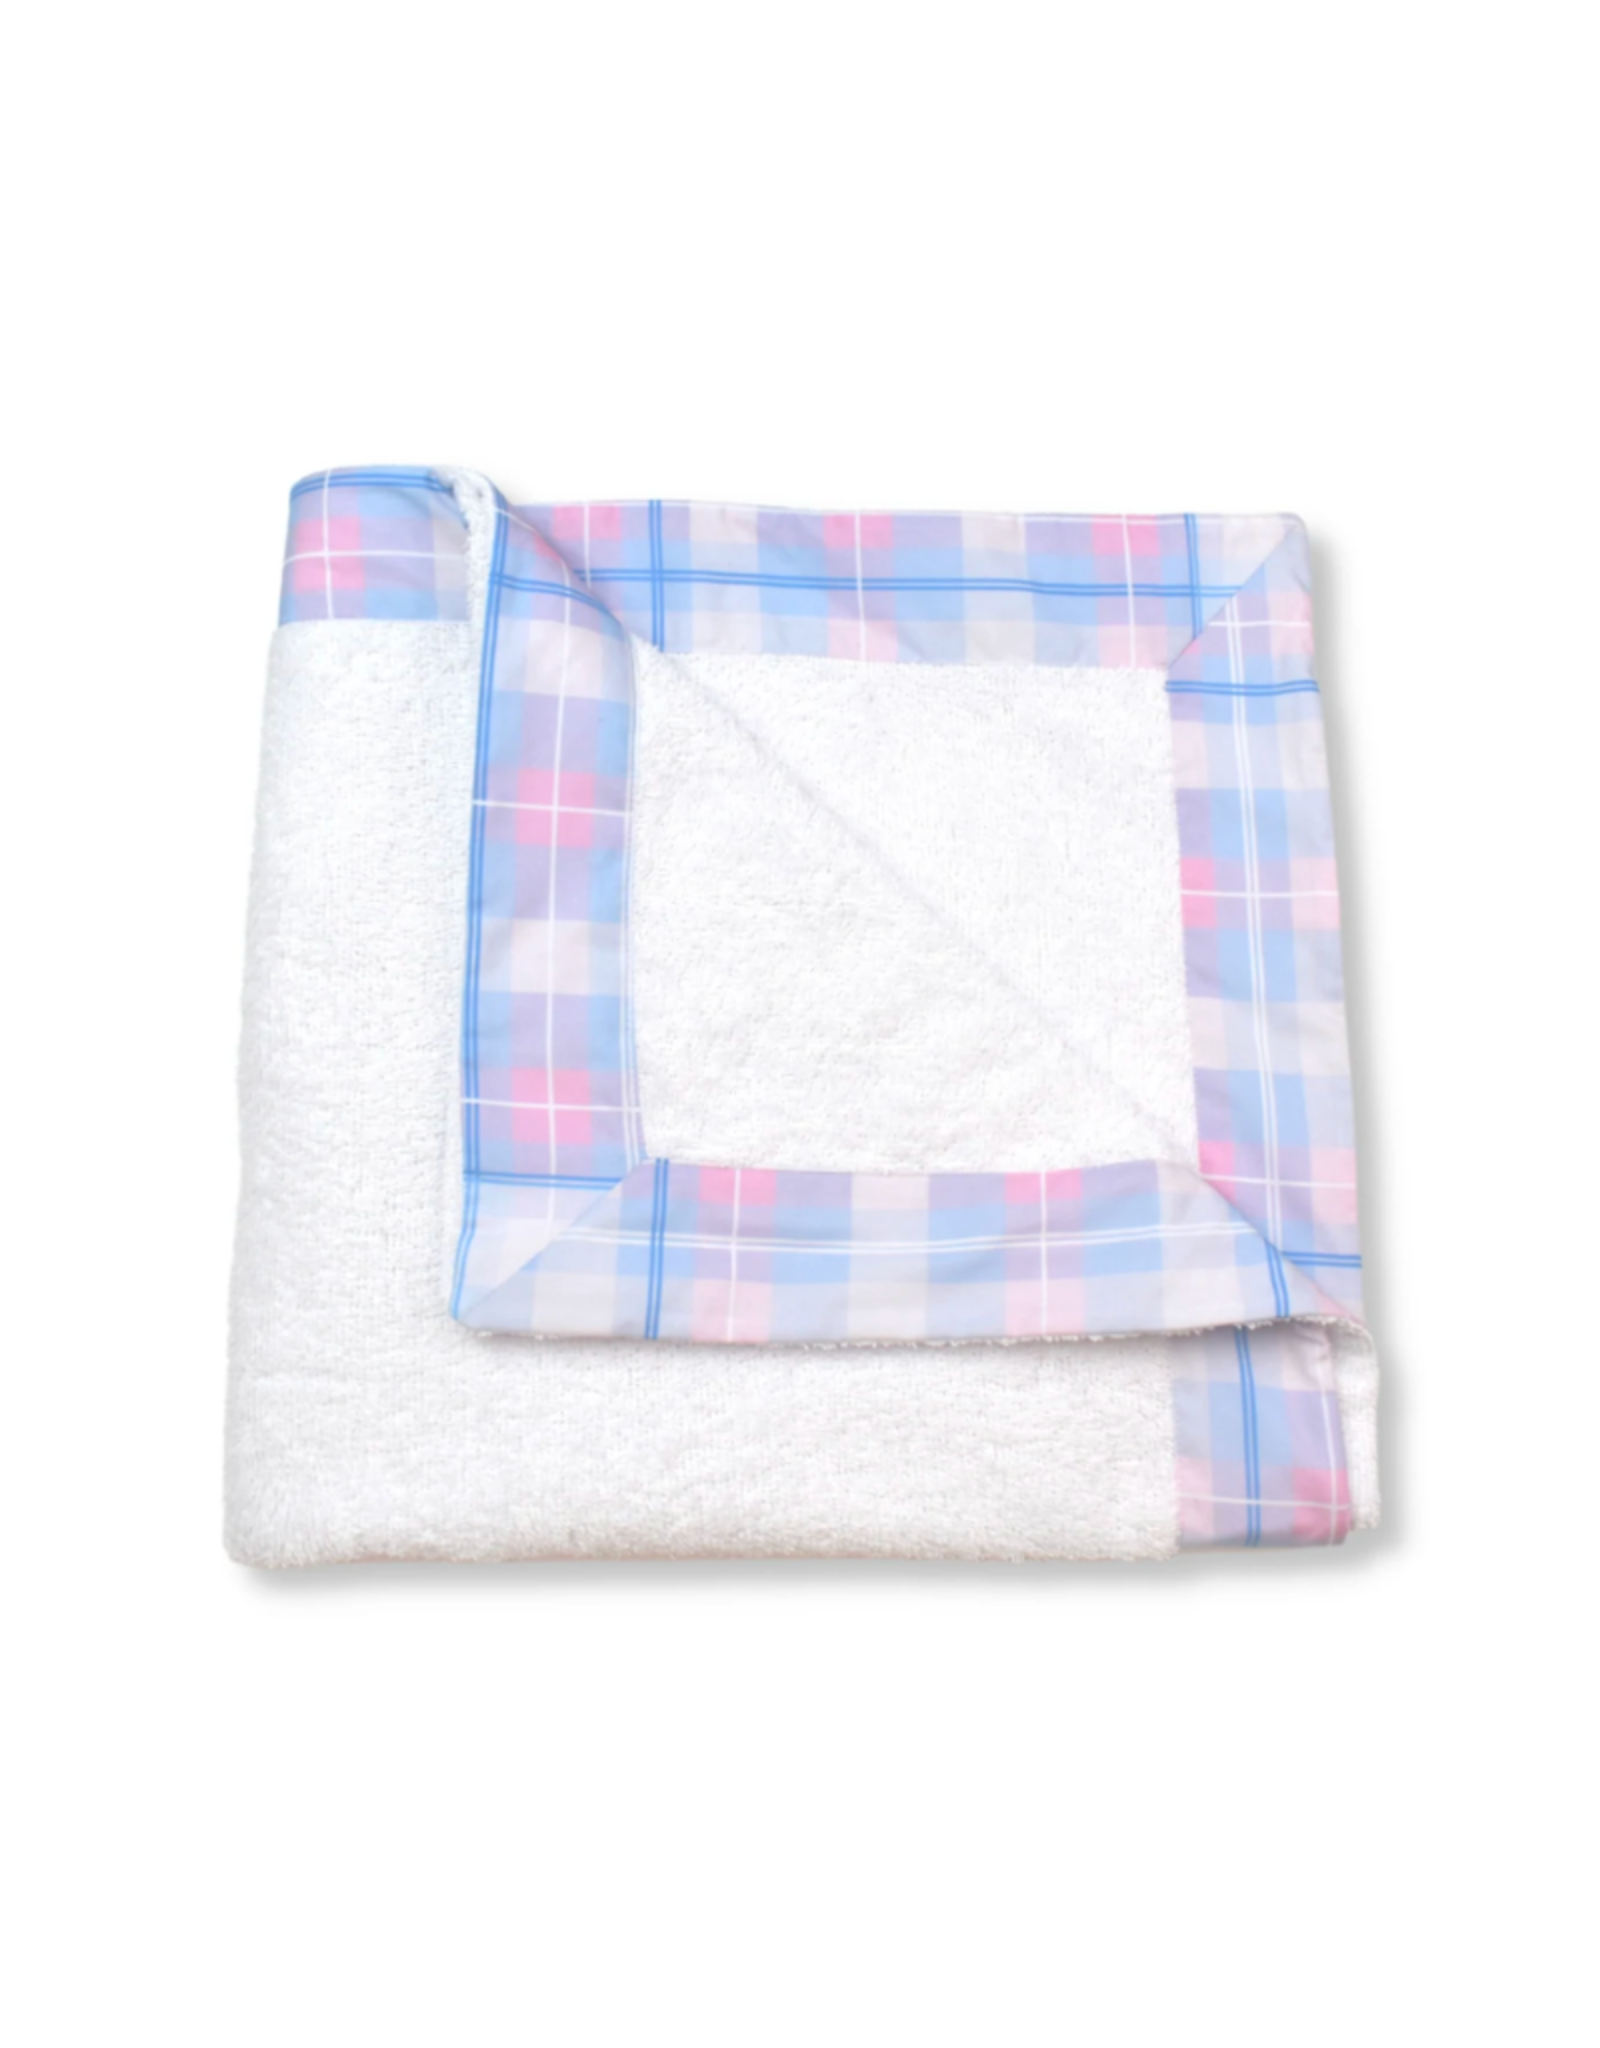 LullabySet Poolside Towel - Plaid